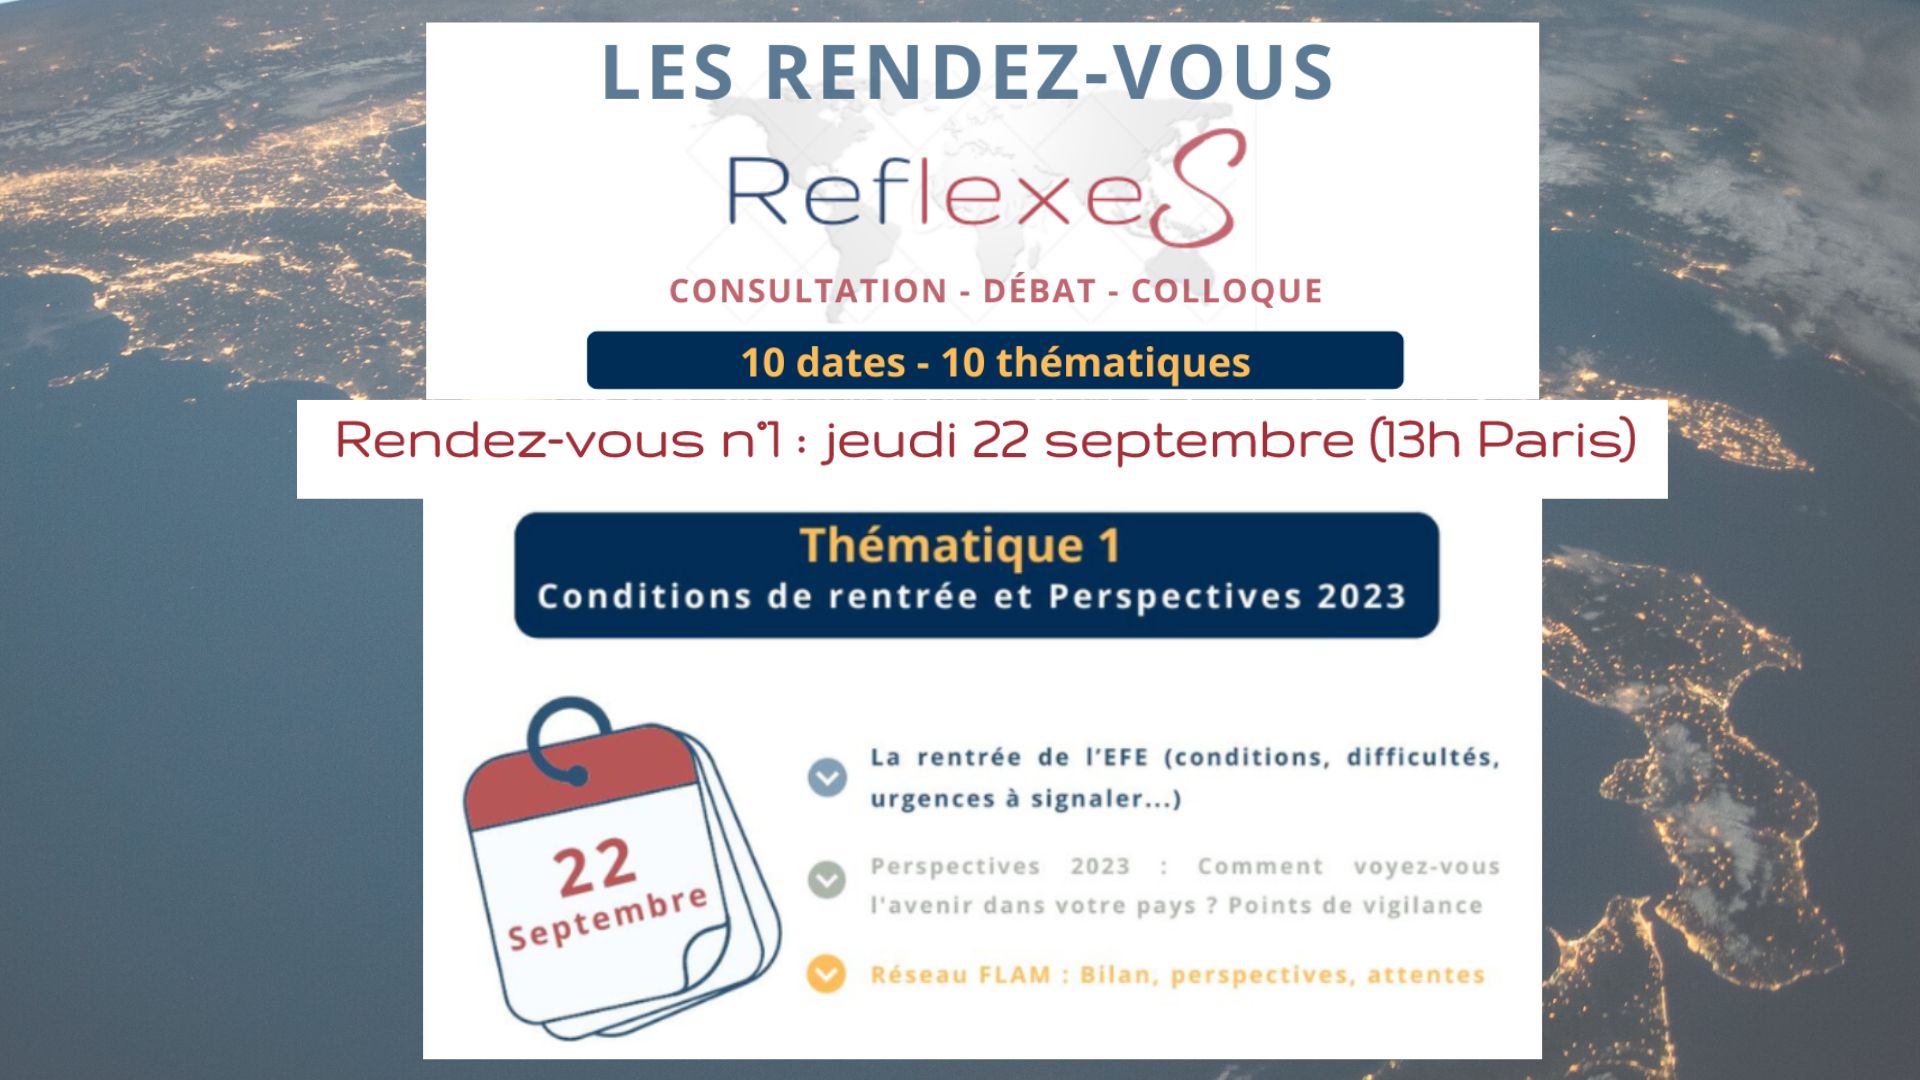 Le premier rendez-vous “RéflexeS“ aura lieu le 22 septembre